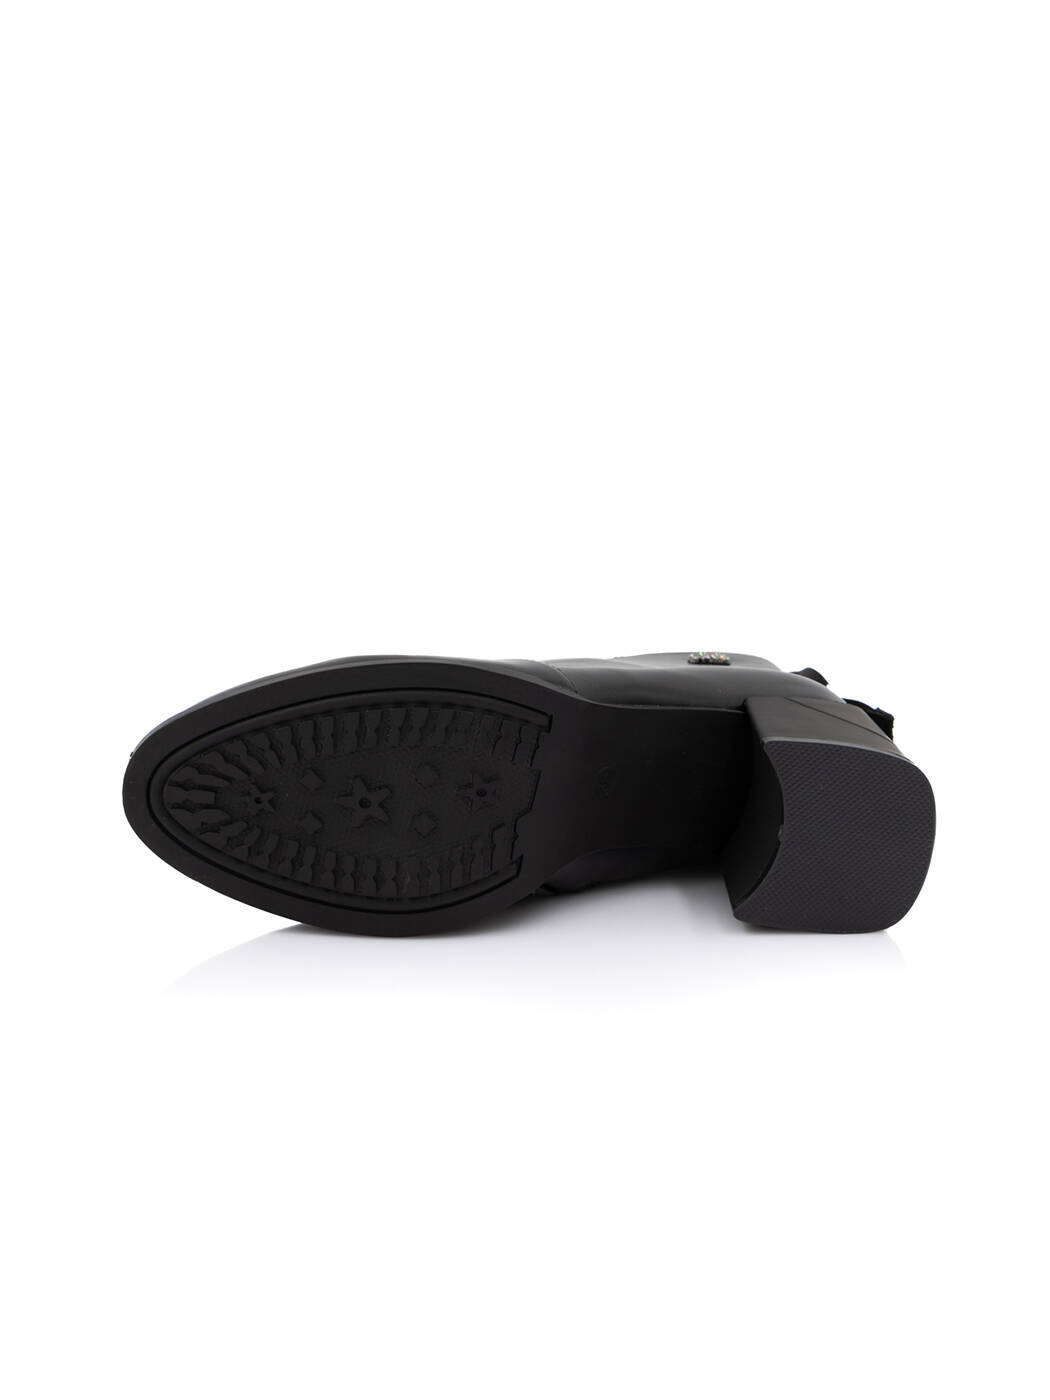 Ботинки женские черные экокожа каблук устойчивый демисезон от производителя AM вид 2